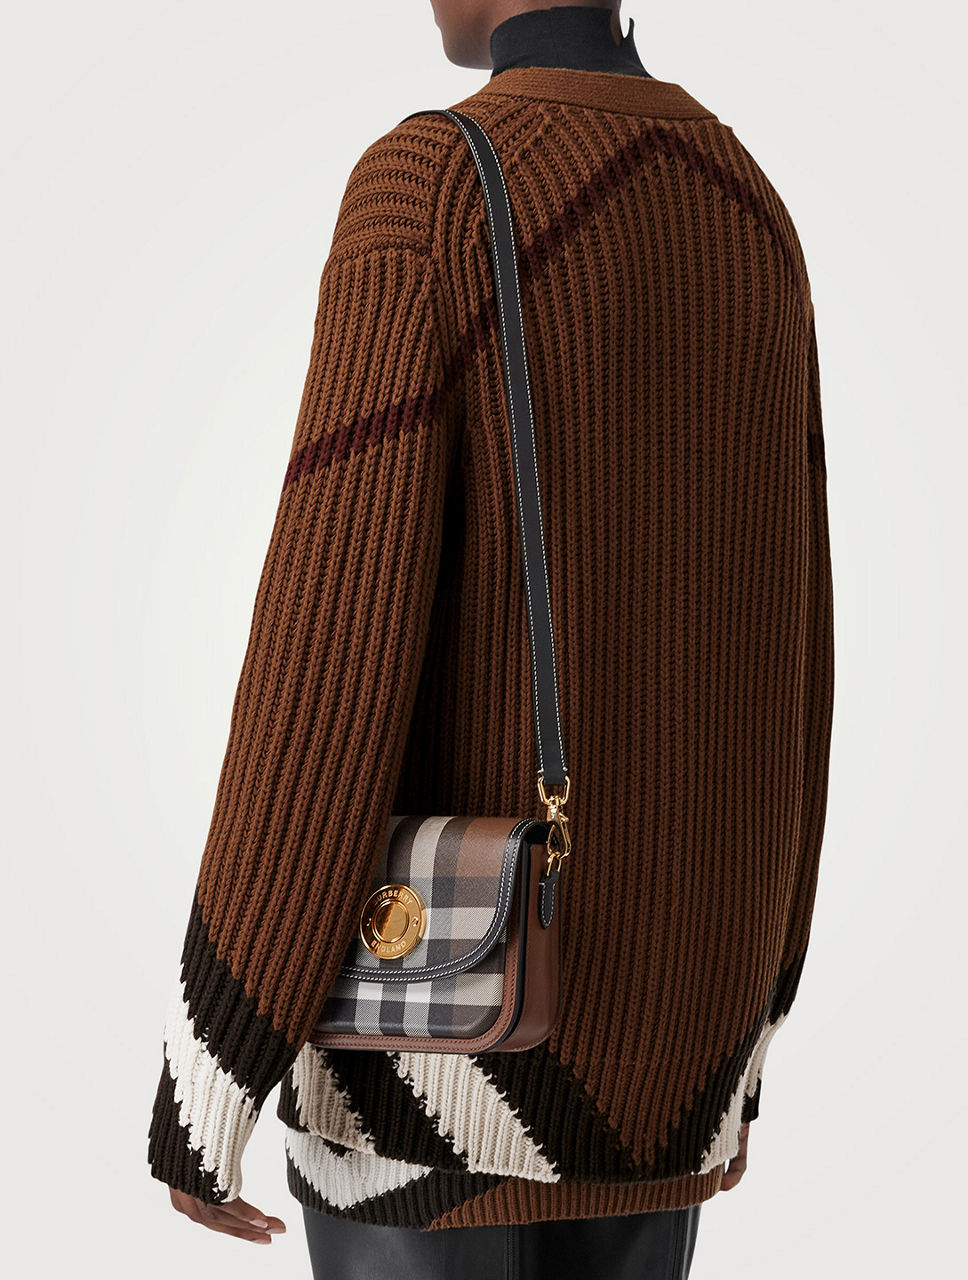 Check and Leather Medium Elizabeth Bag in Dark Birch Brown - Women